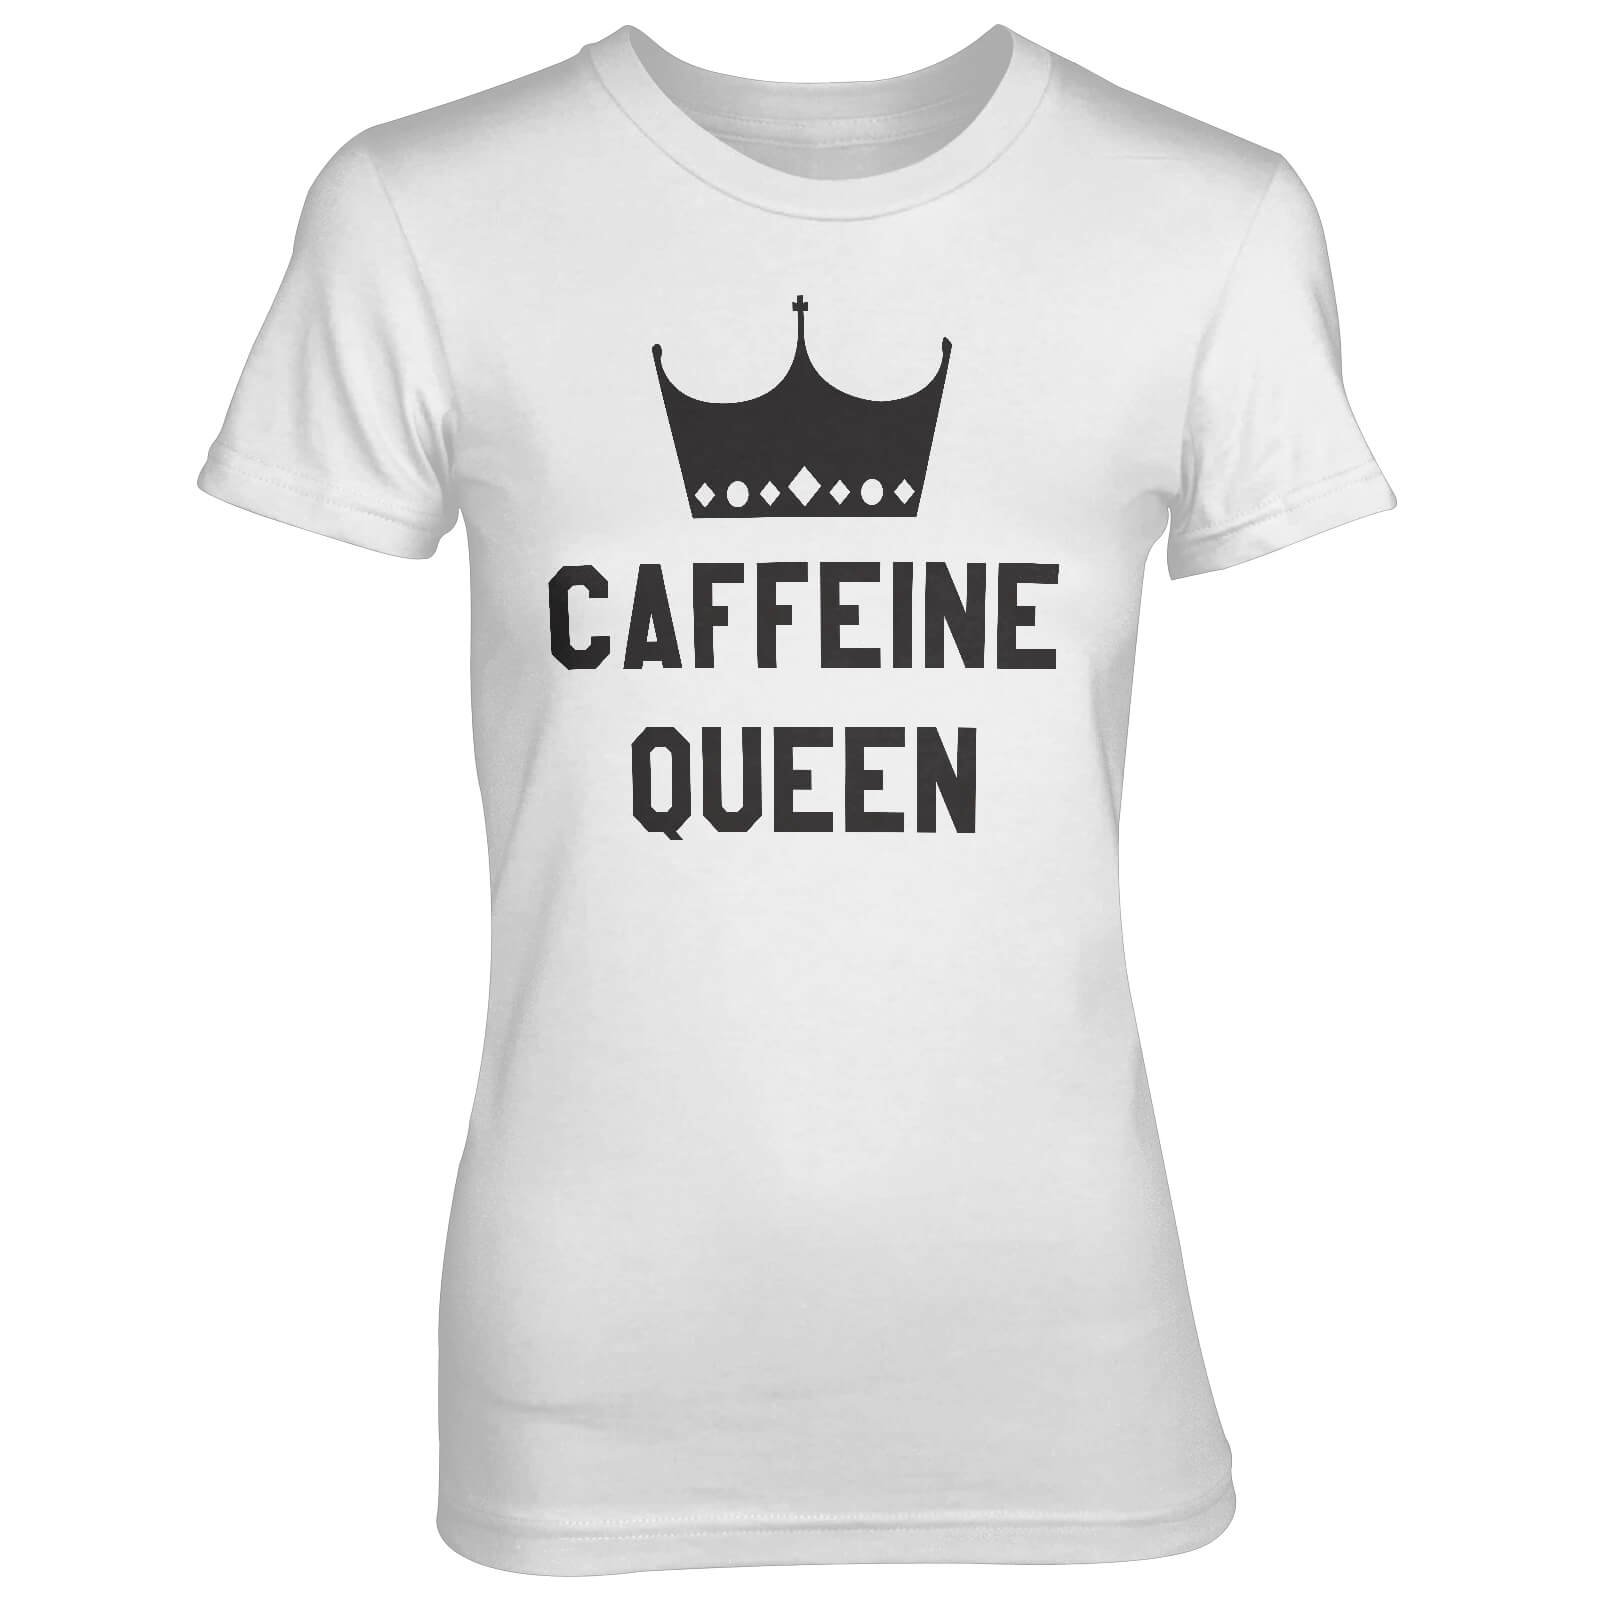 Caffeine Queen Women's White T-Shirt - S - White